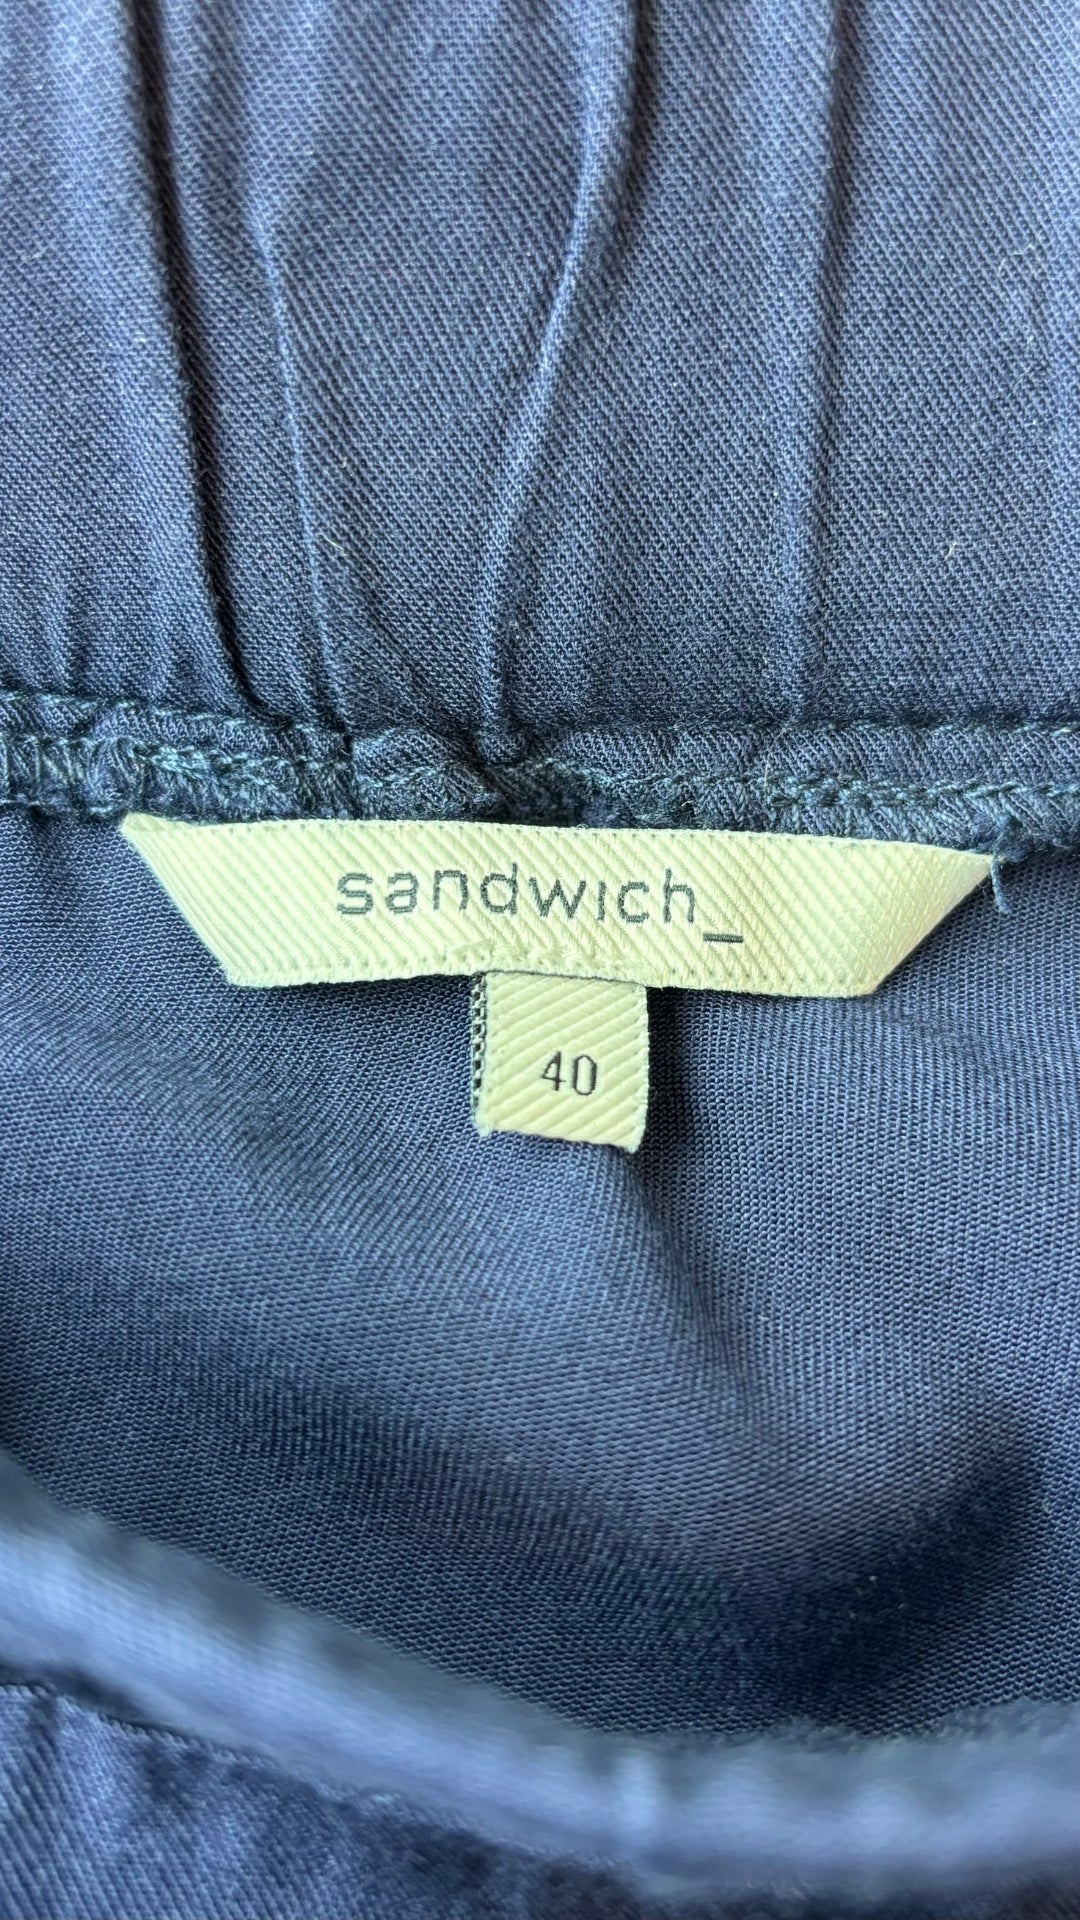 Jupe sport chic confortable Sandwich, taille 40 (large). Vue de l'étiquette de marque et taille.